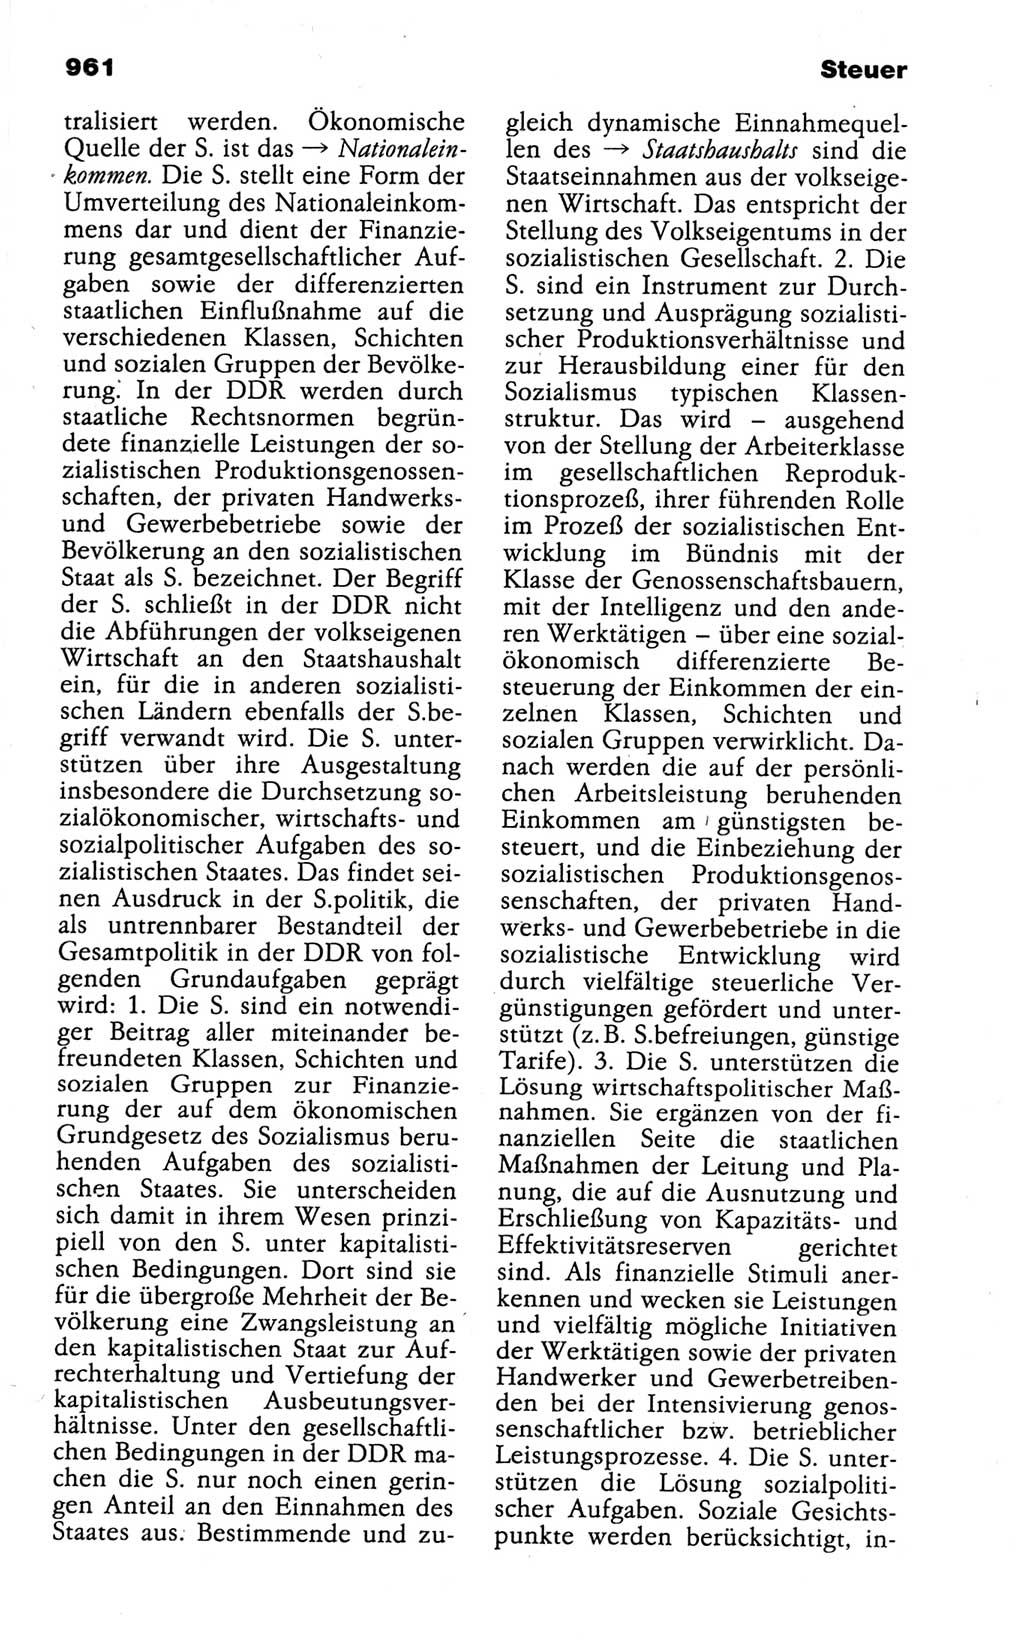 Kleines politisches Wörterbuch [Deutsche Demokratische Republik (DDR)] 1988, Seite 961 (Kl. pol. Wb. DDR 1988, S. 961)